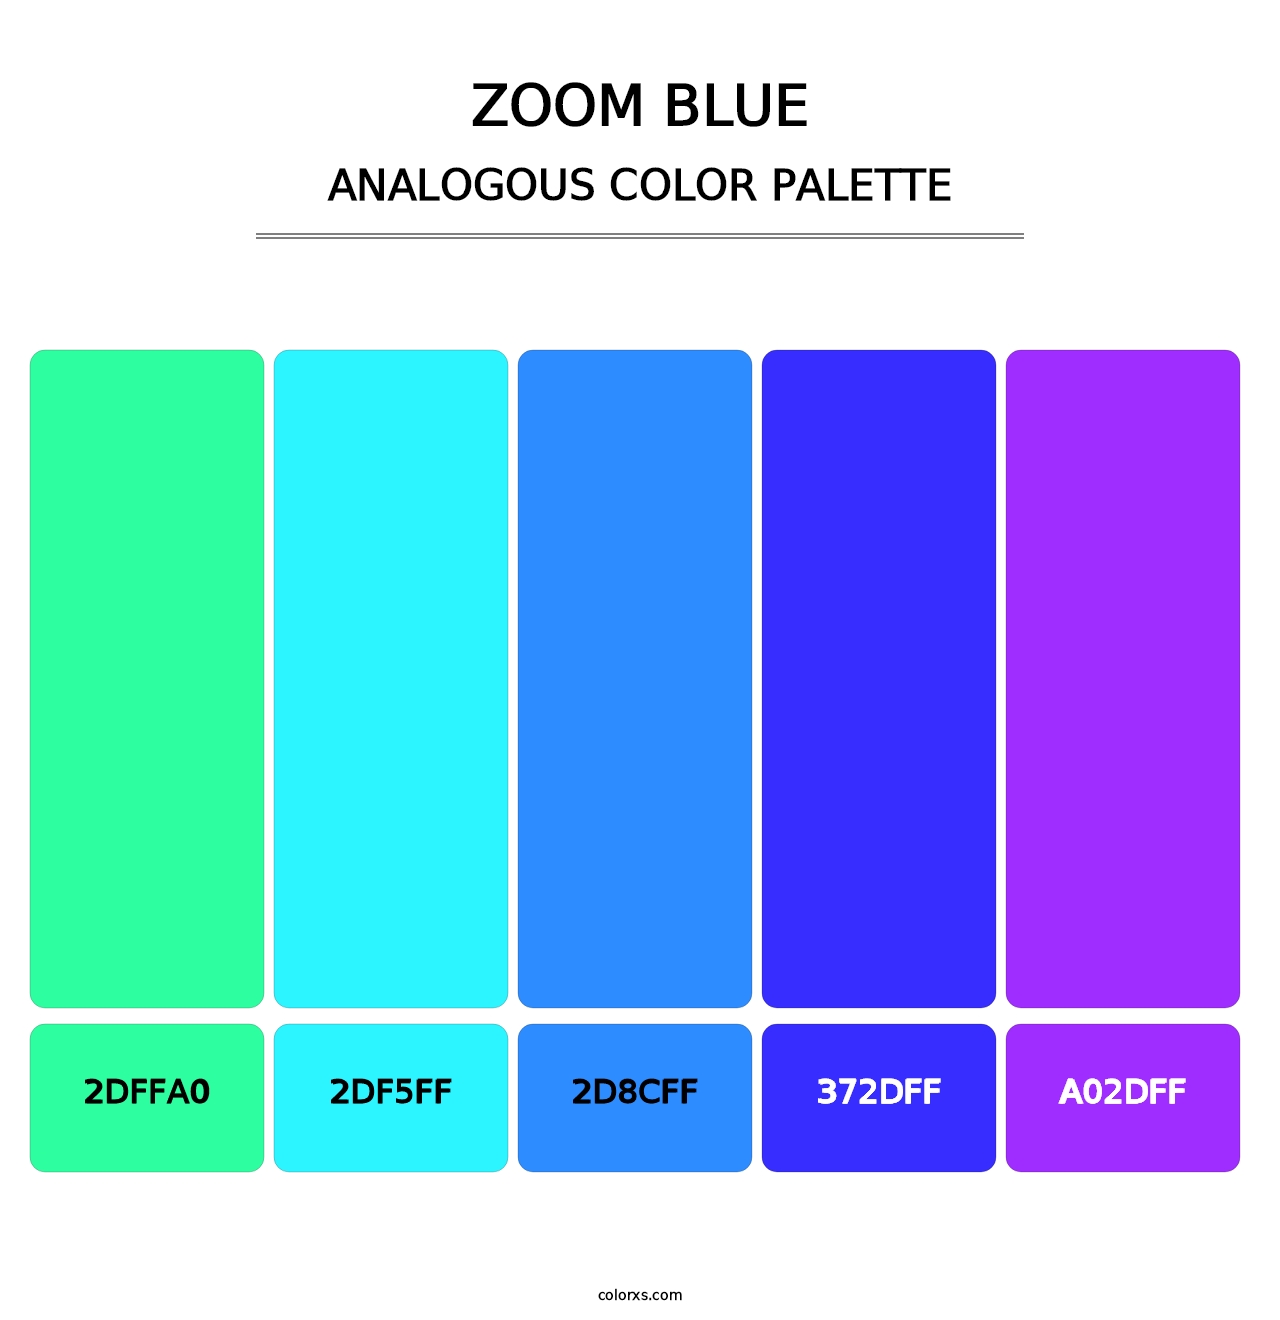 Zoom Blue - Analogous Color Palette